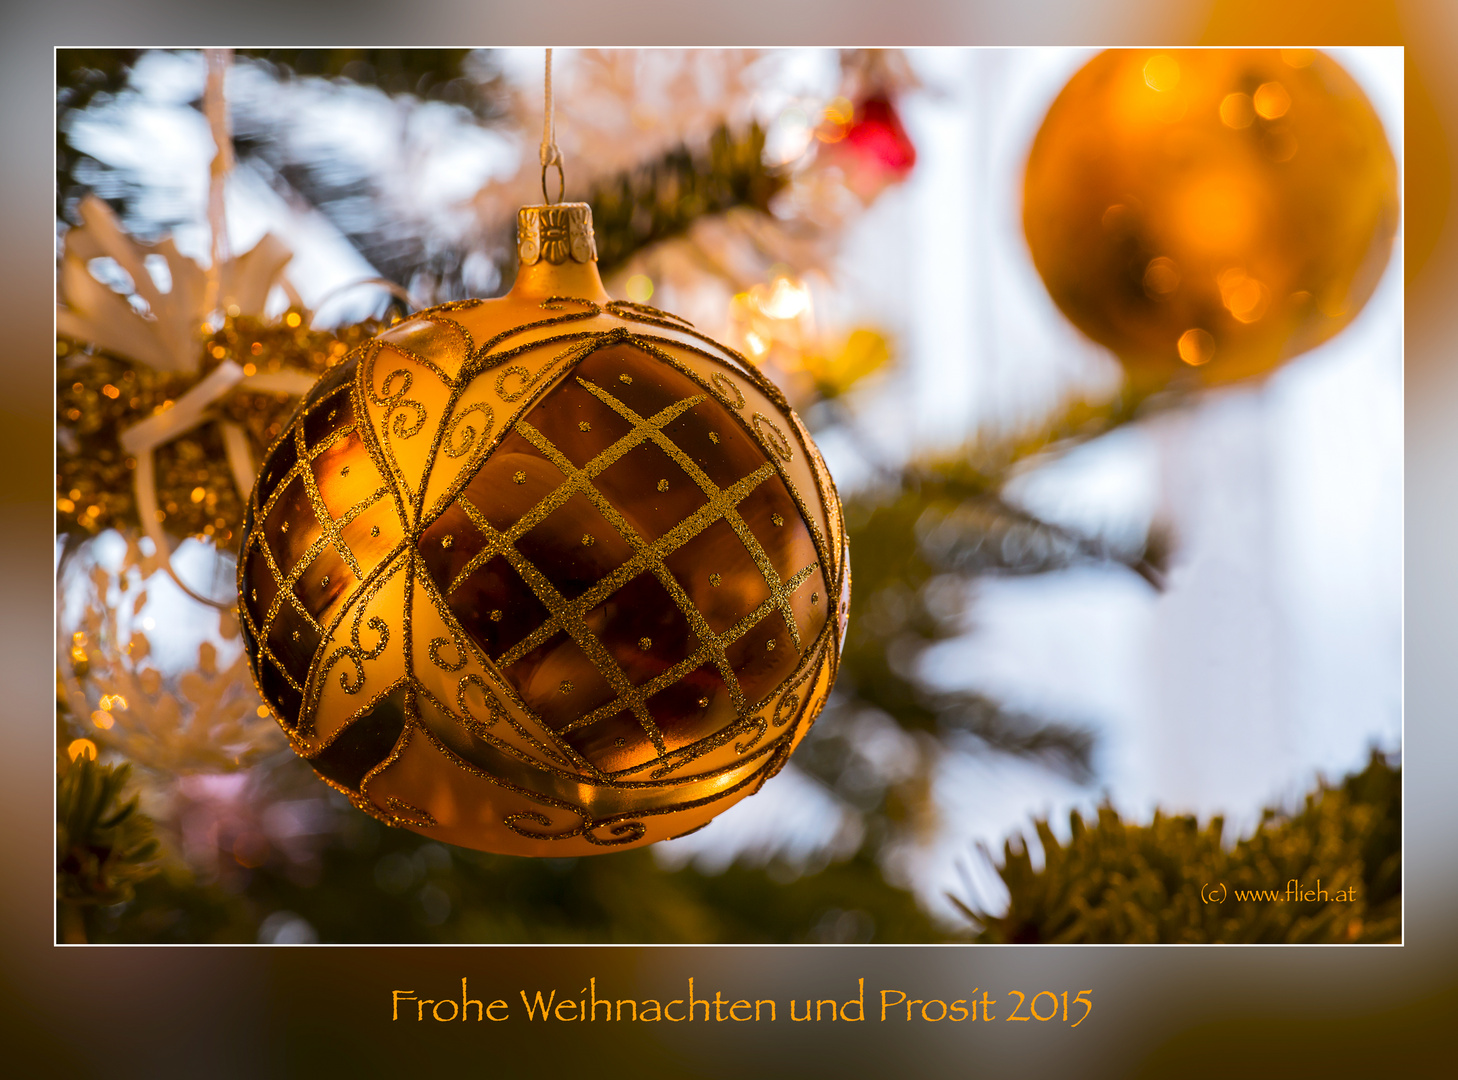 Allen Freundinnen und Freunden der "fc" frohe Weihnachten und Prosit 2015